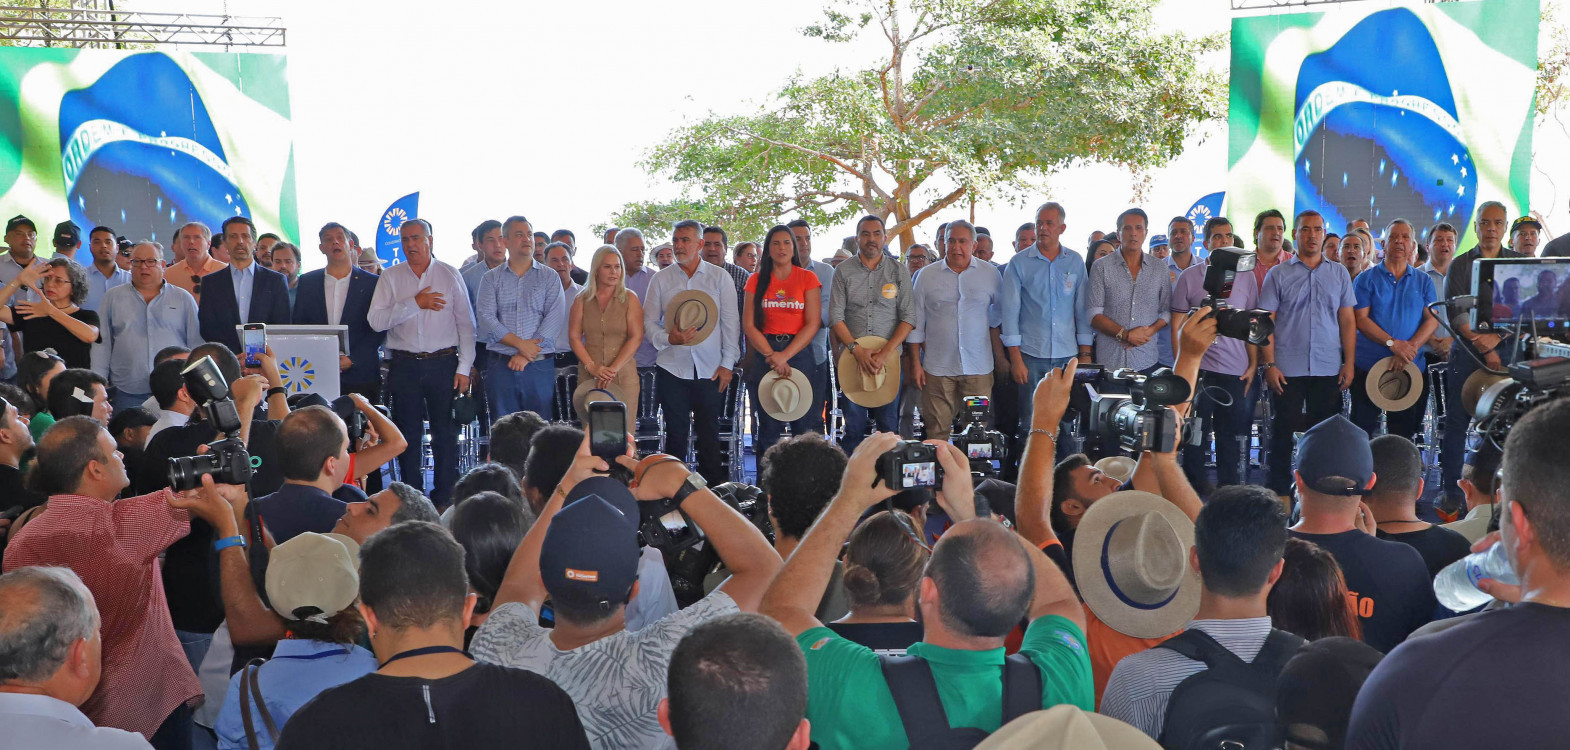  Público lotou a arena onde ocorreu a abertura da 24ª Feira de Tecnologia Agropecuária do Tocantins, atualmente a maior da região Norte do Brasil